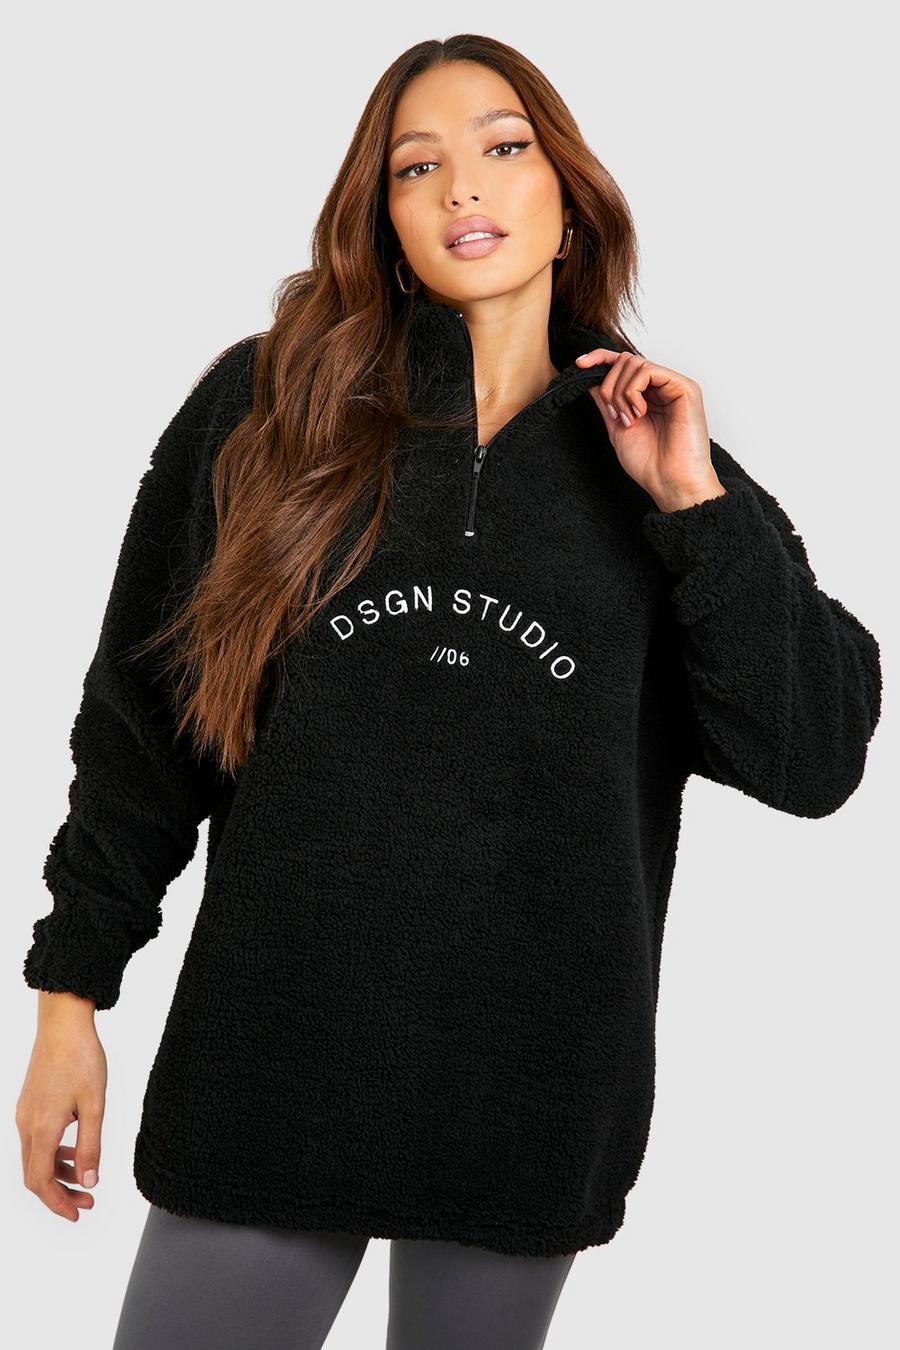 Black Tall Dsgn Studio Premium Sweatshirt i teddy med brodyr och kort dragkedja